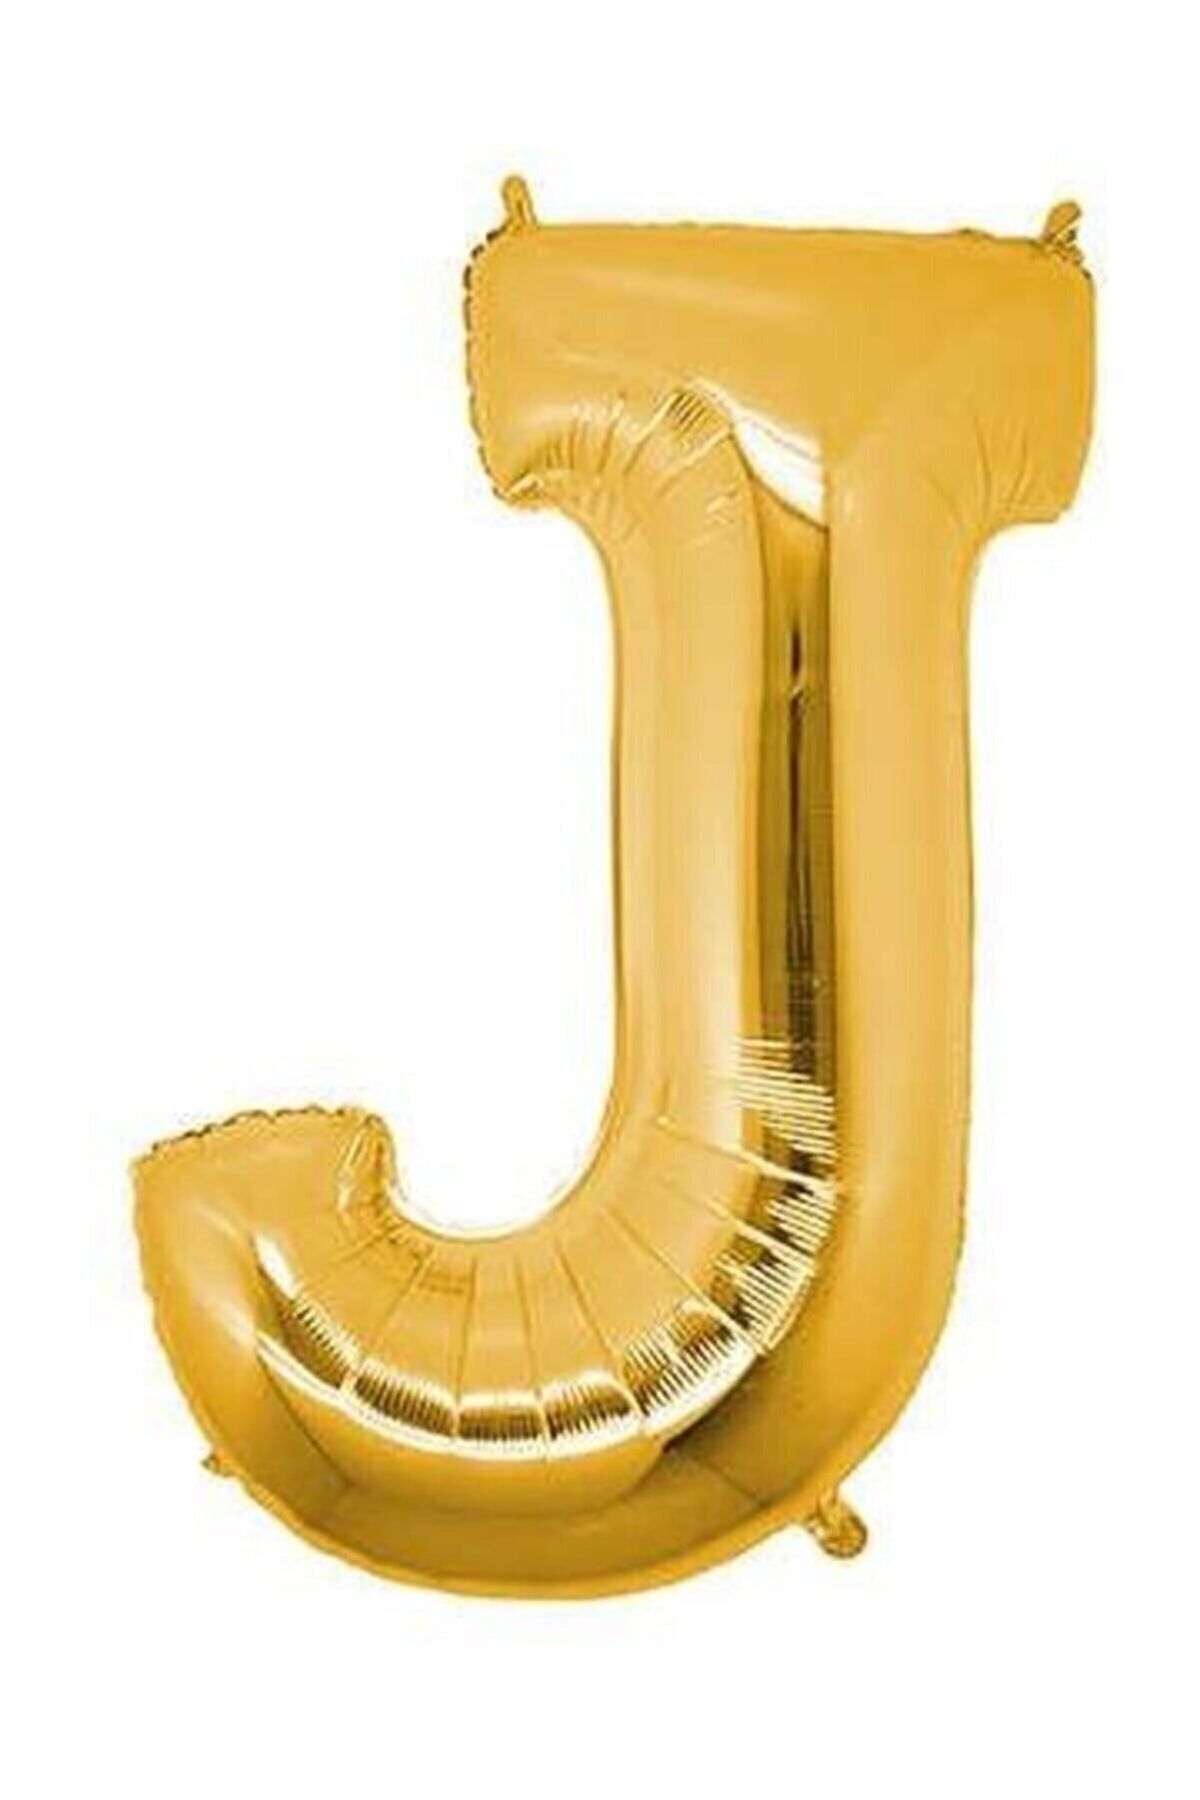 ÇEÇEN HOME 100cm Harfi Folyo Balon Gold Altın Rengi 40 Inc Helyum Gazına Uygun